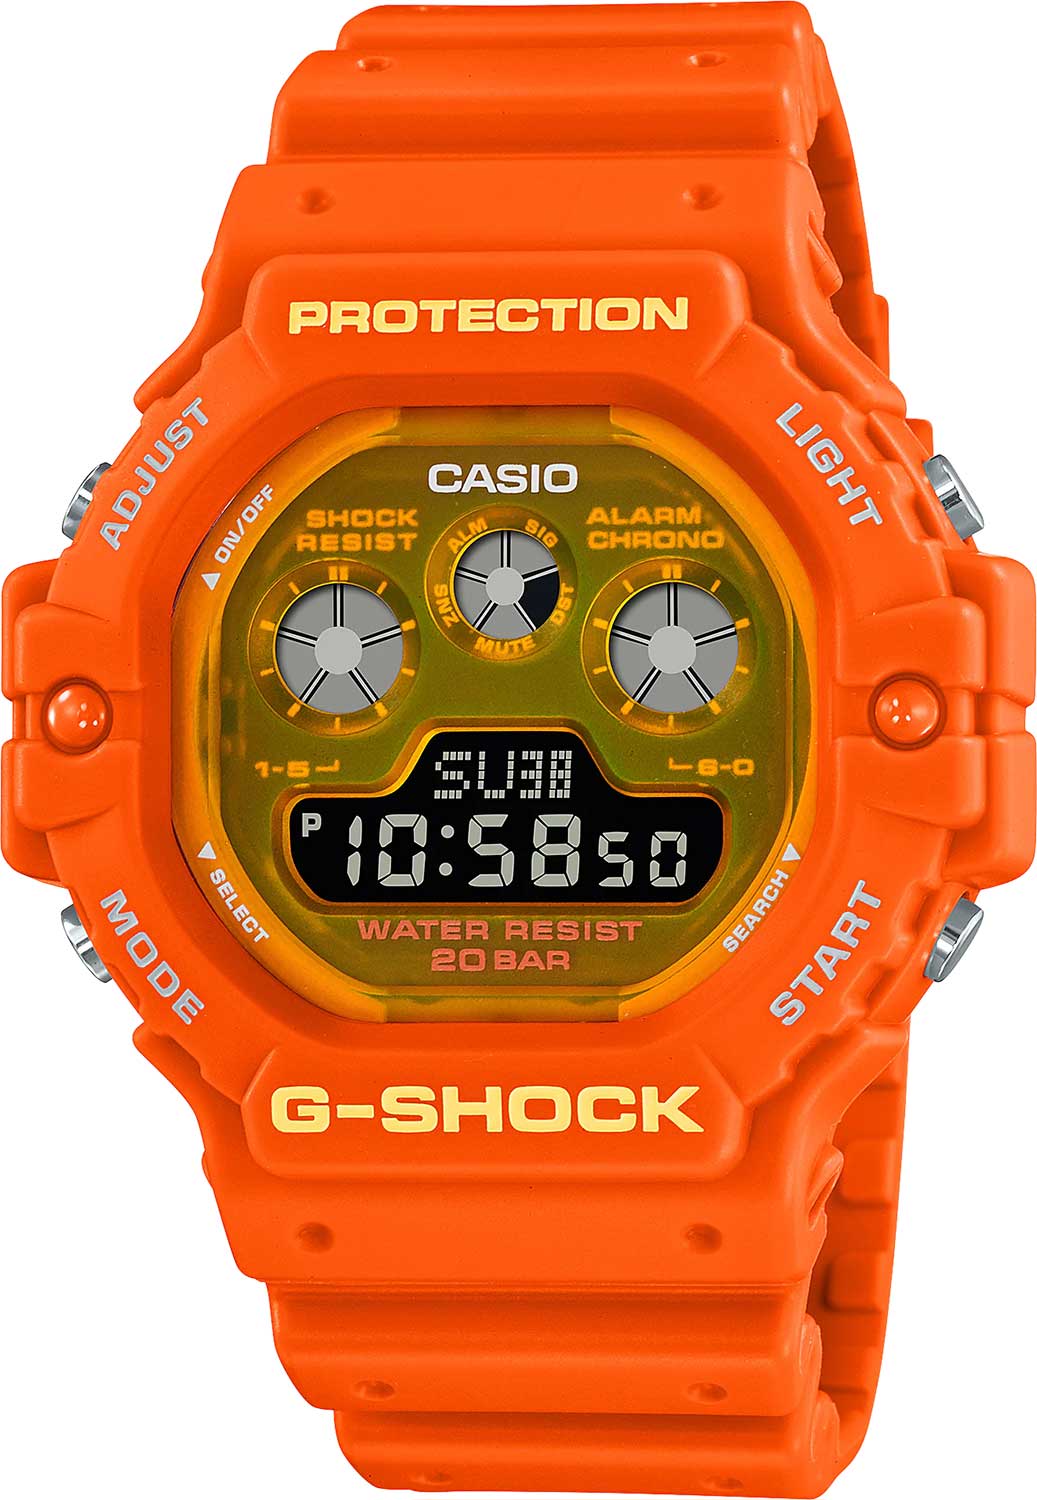    Casio G-SHOCK DW-5900TS-4  